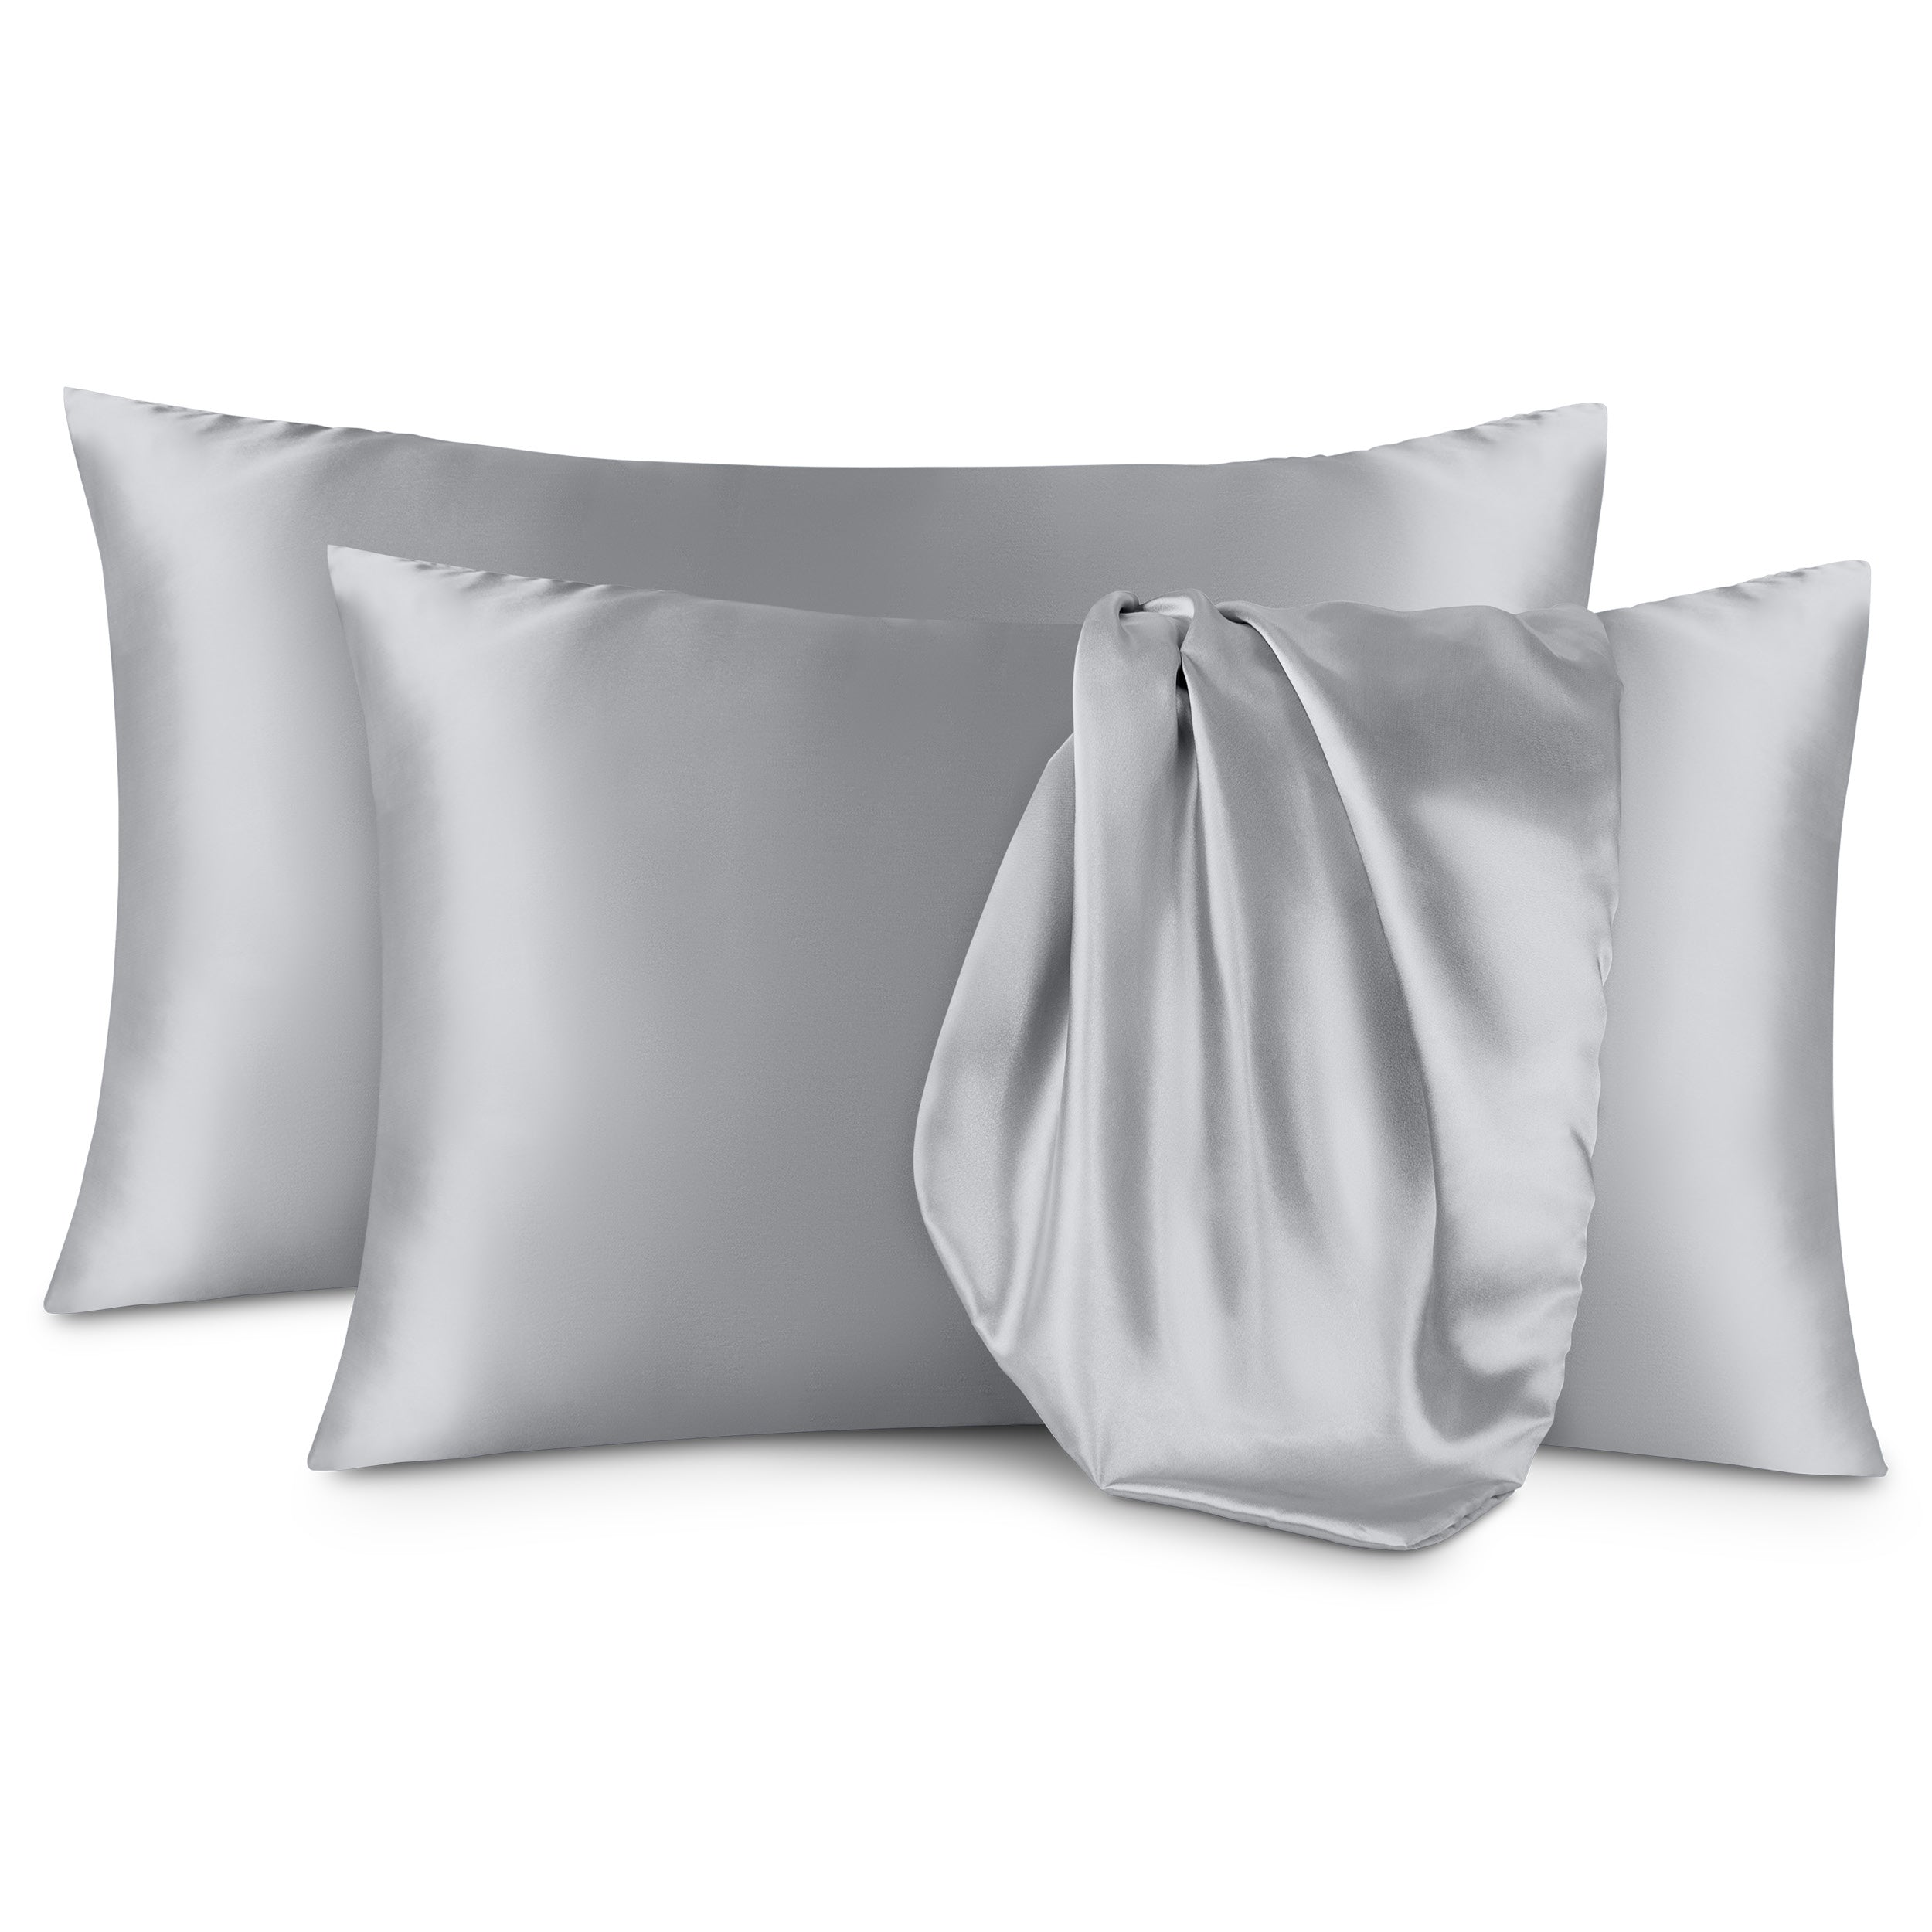 Two satin pillowcases on a white background